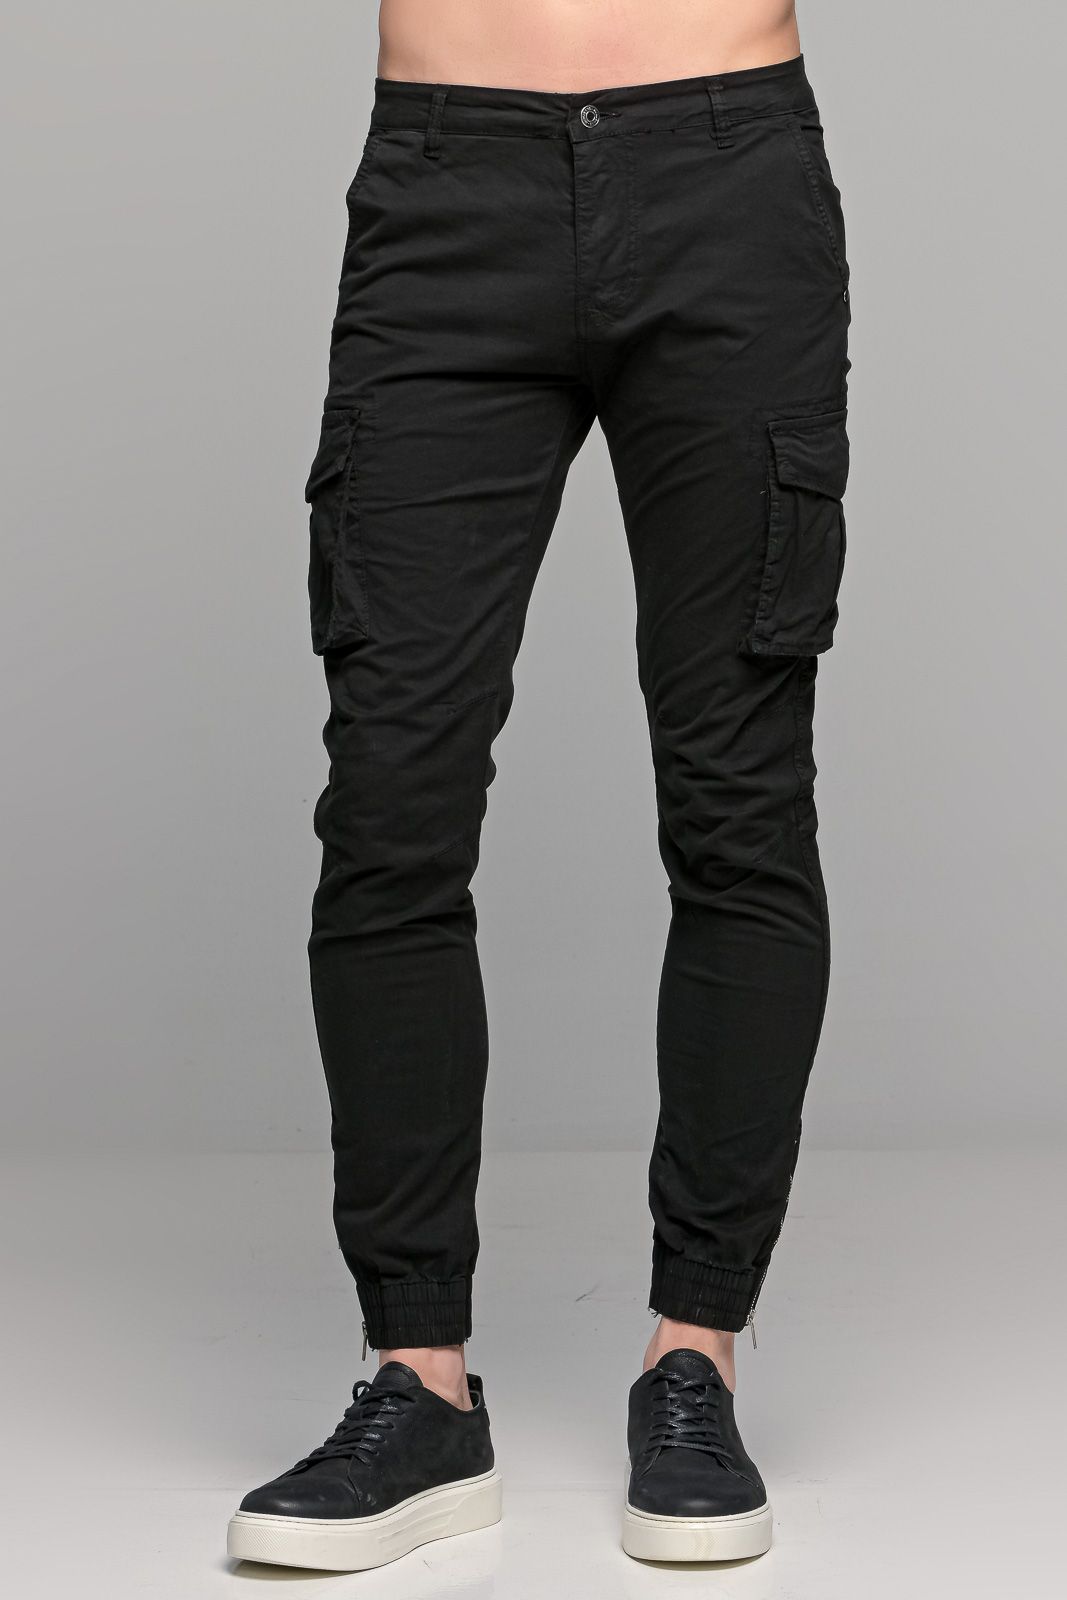 Μαύρο ανδρικό cargo παντελόνι με λάστιχο - Skinny fit